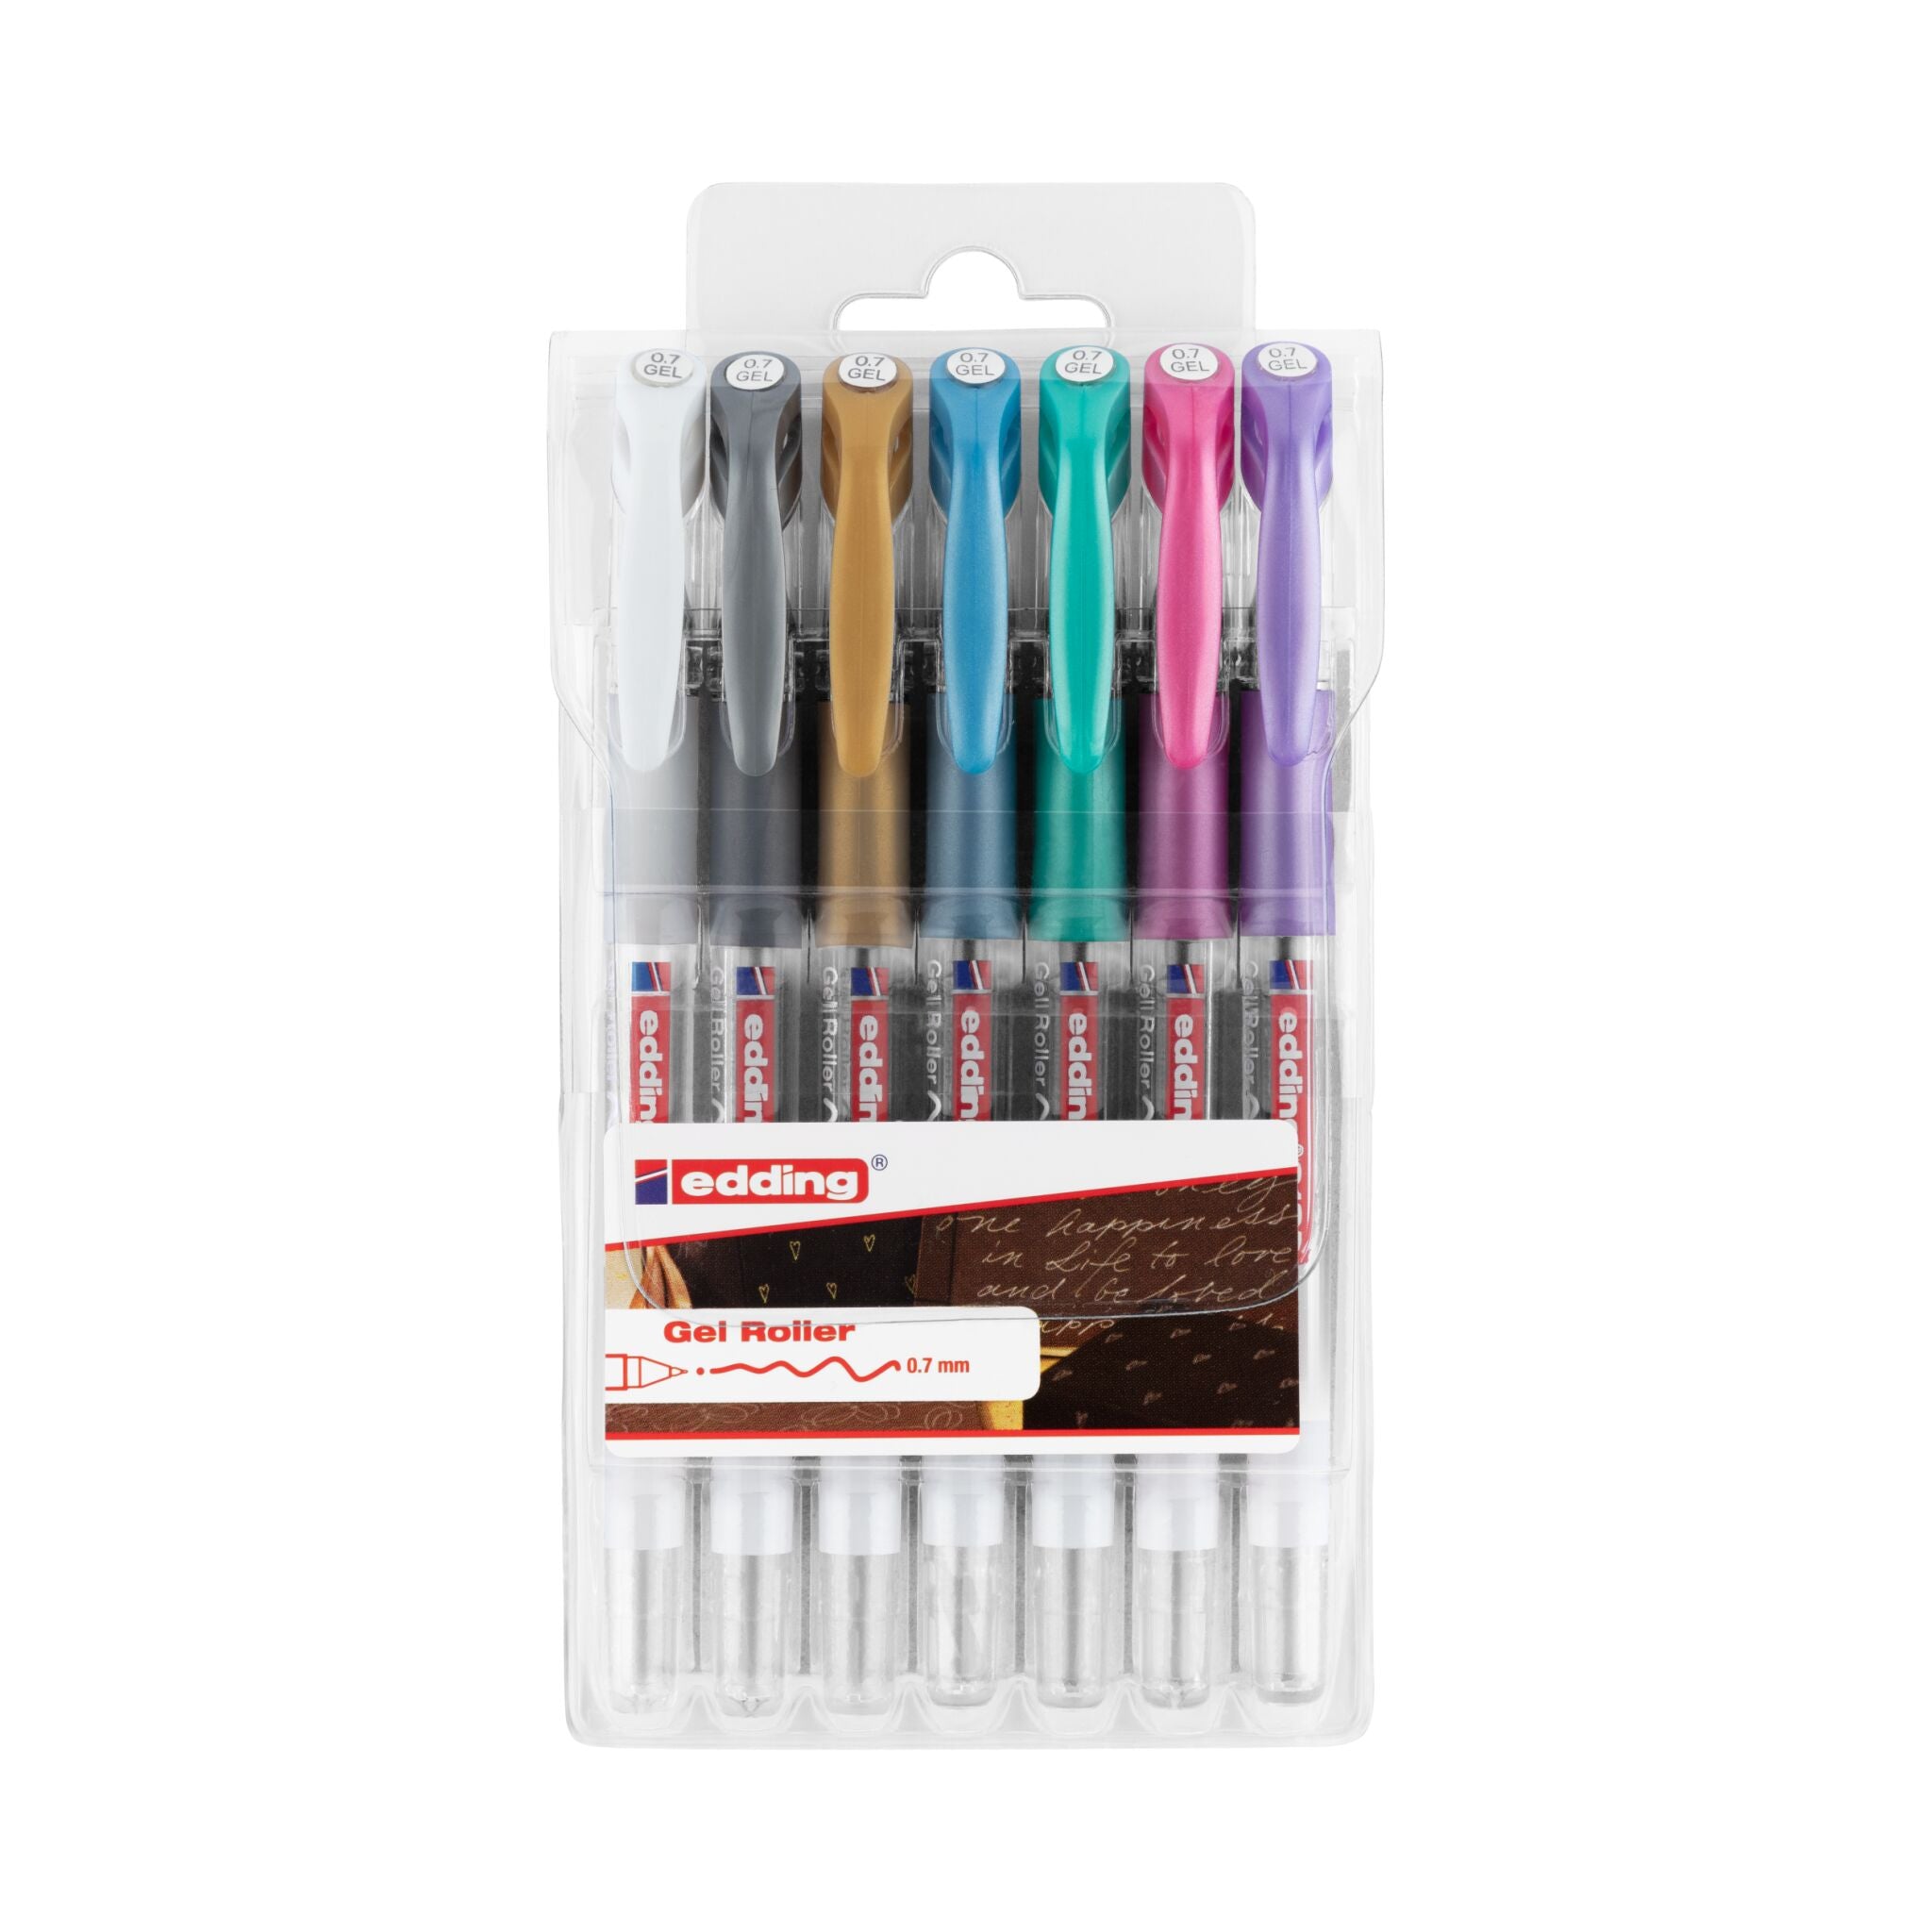 Eine Packung edding 2185 Gelroller 7er-Set Stifte mit verschiedenen Metallicfarben in einer durchsichtigen Kunststoffverpackung.